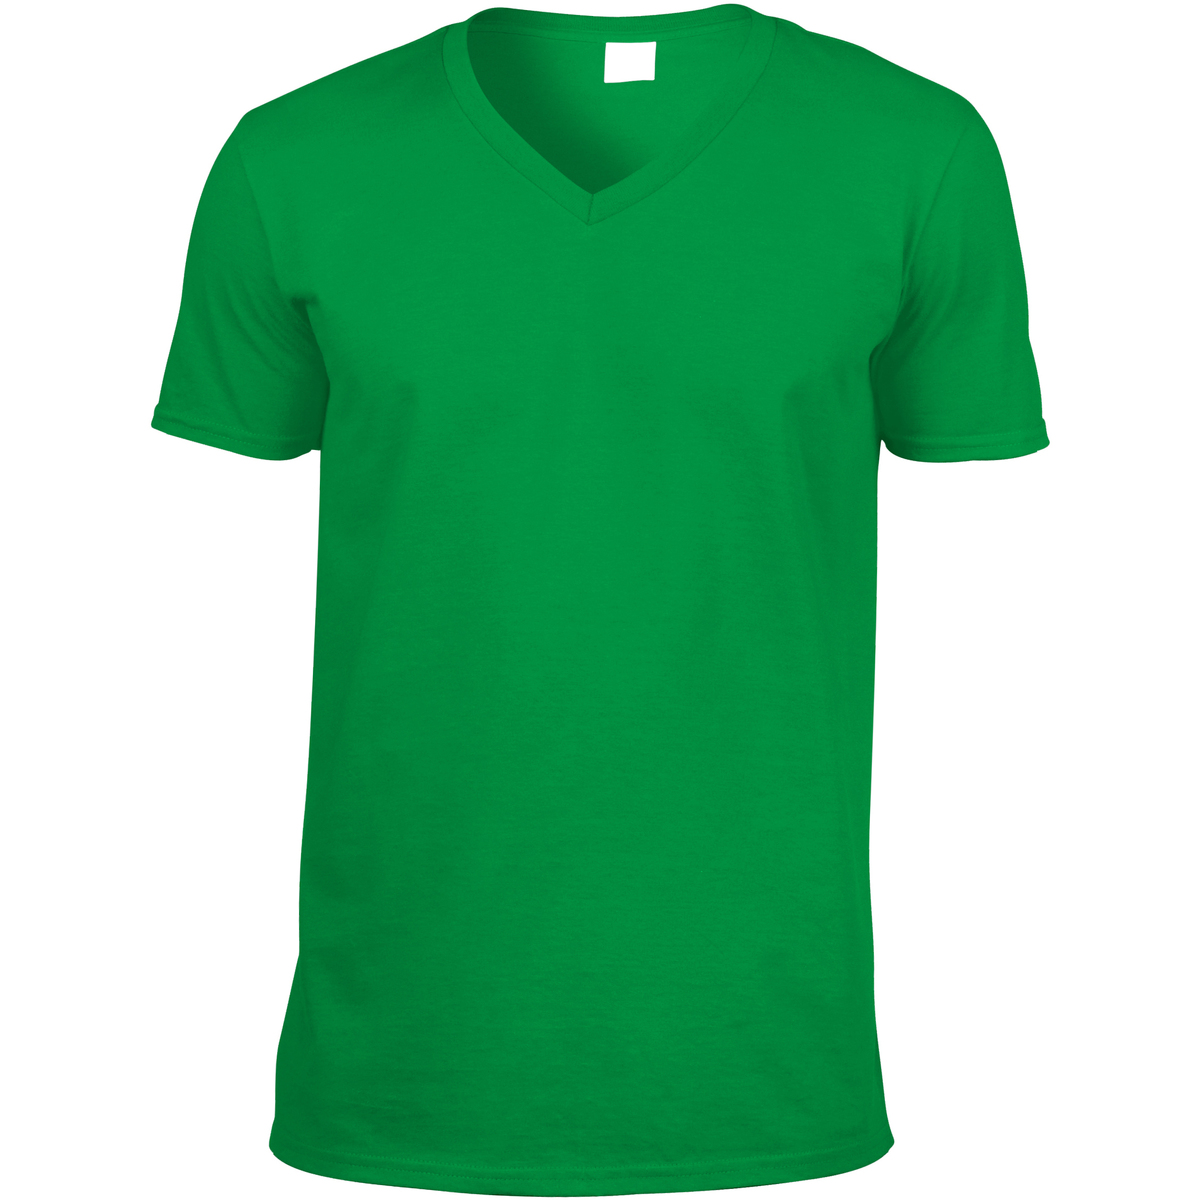 Vêtements Homme zegna long sleeved linen shirt item 64V00 Vert